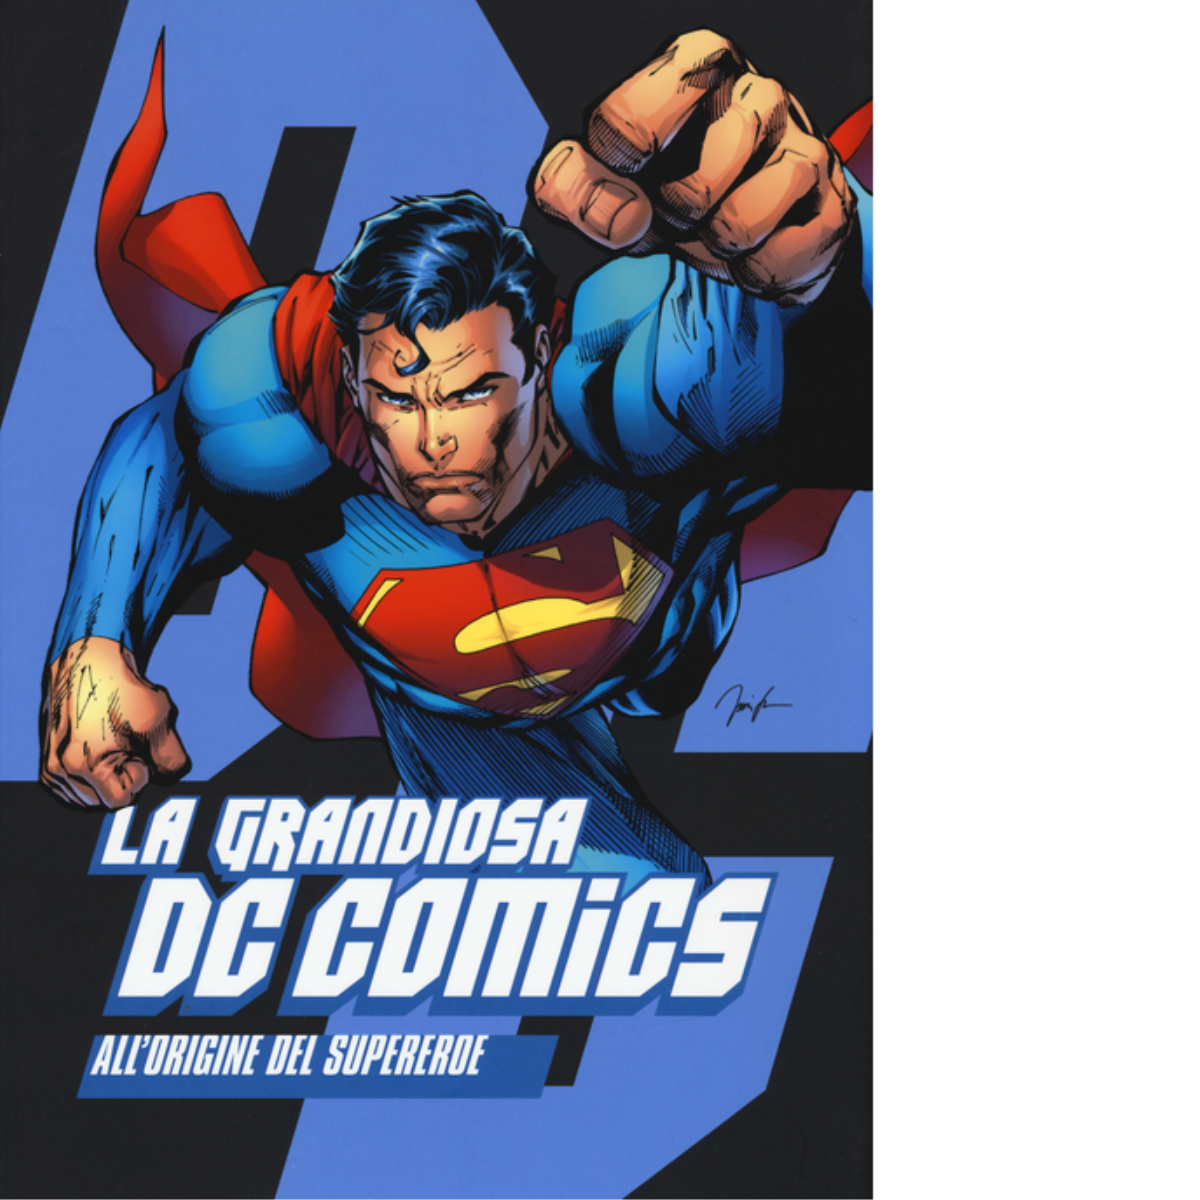 La grandiosa DC Comics. All'origine del supereroe - AA.VV. - Comicon, 2016